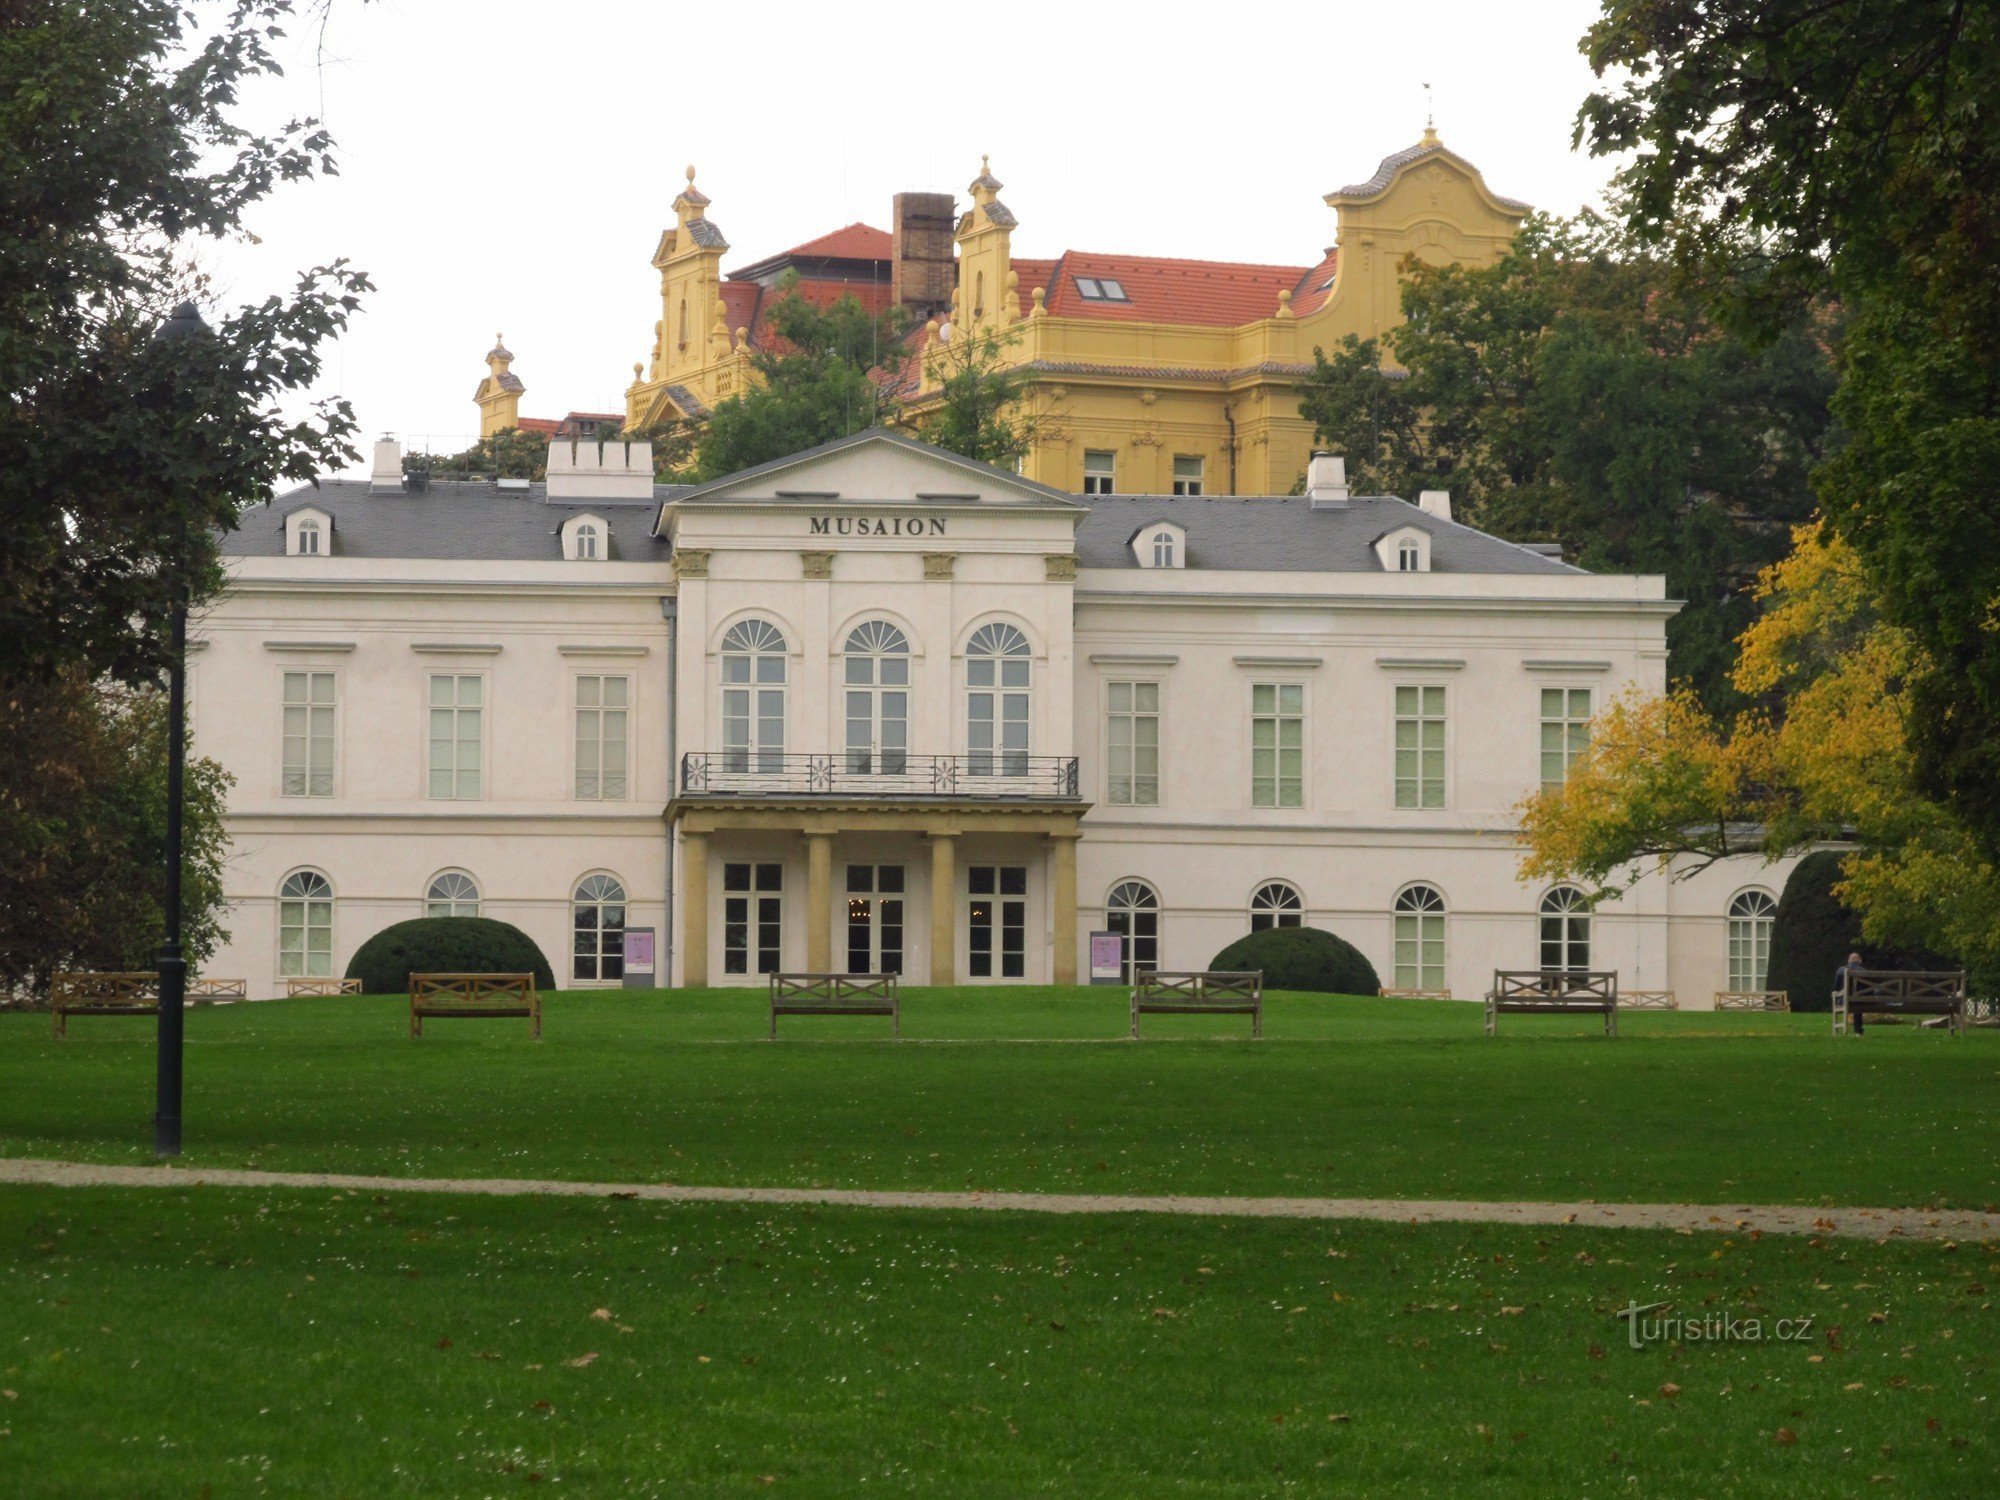 Museu Etnográfico no Palácio de Verão Kinské em Praga